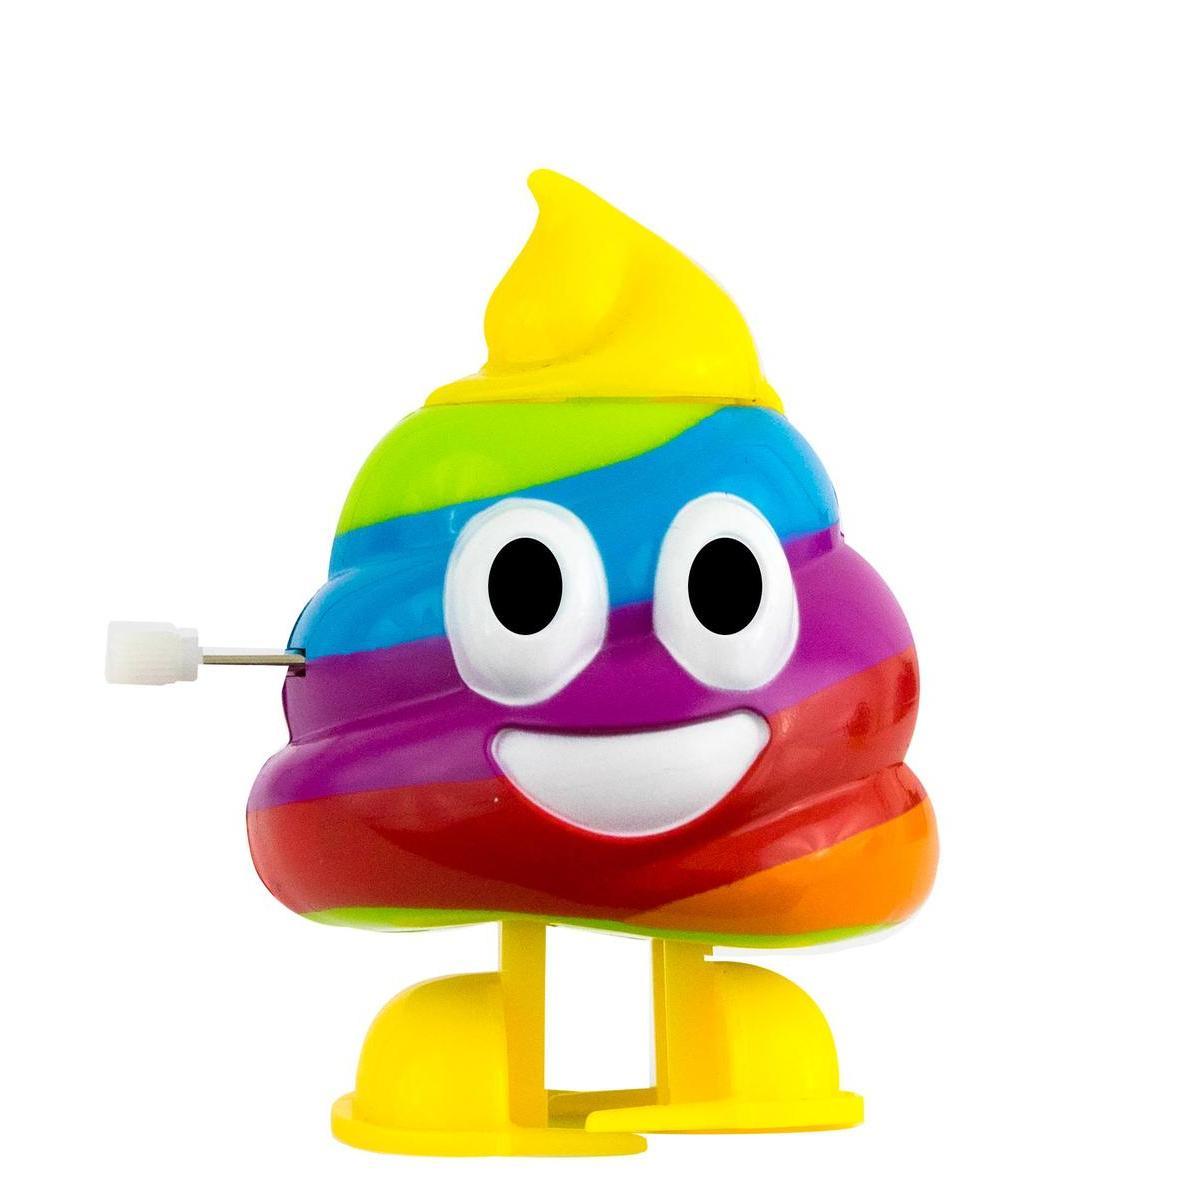 Distributeur de bonbons Oh Poop ! - L 9.8 x H 17.7 x l 6 cm - Multicolore